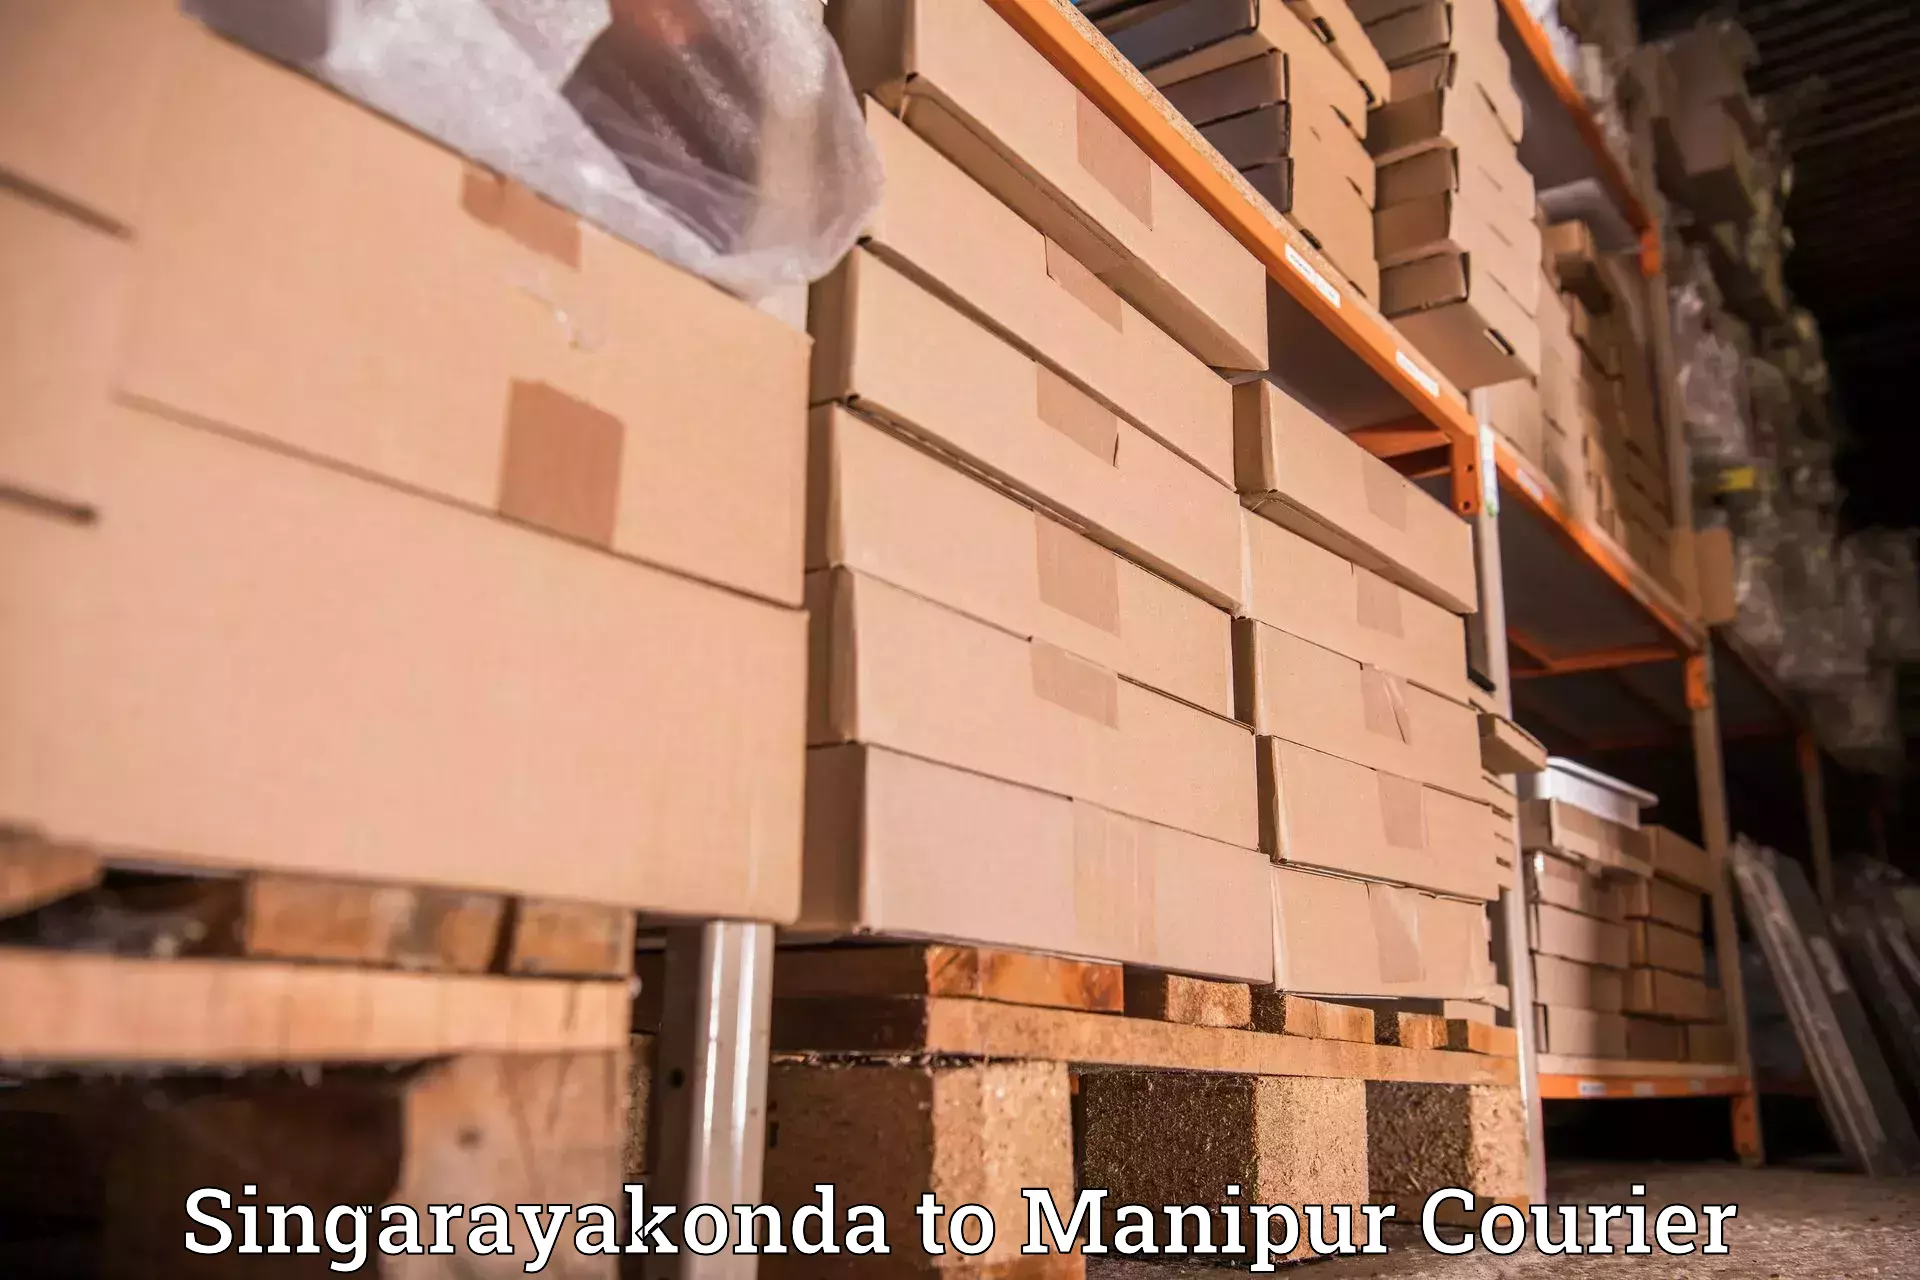 Efficient freight service Singarayakonda to Moirang